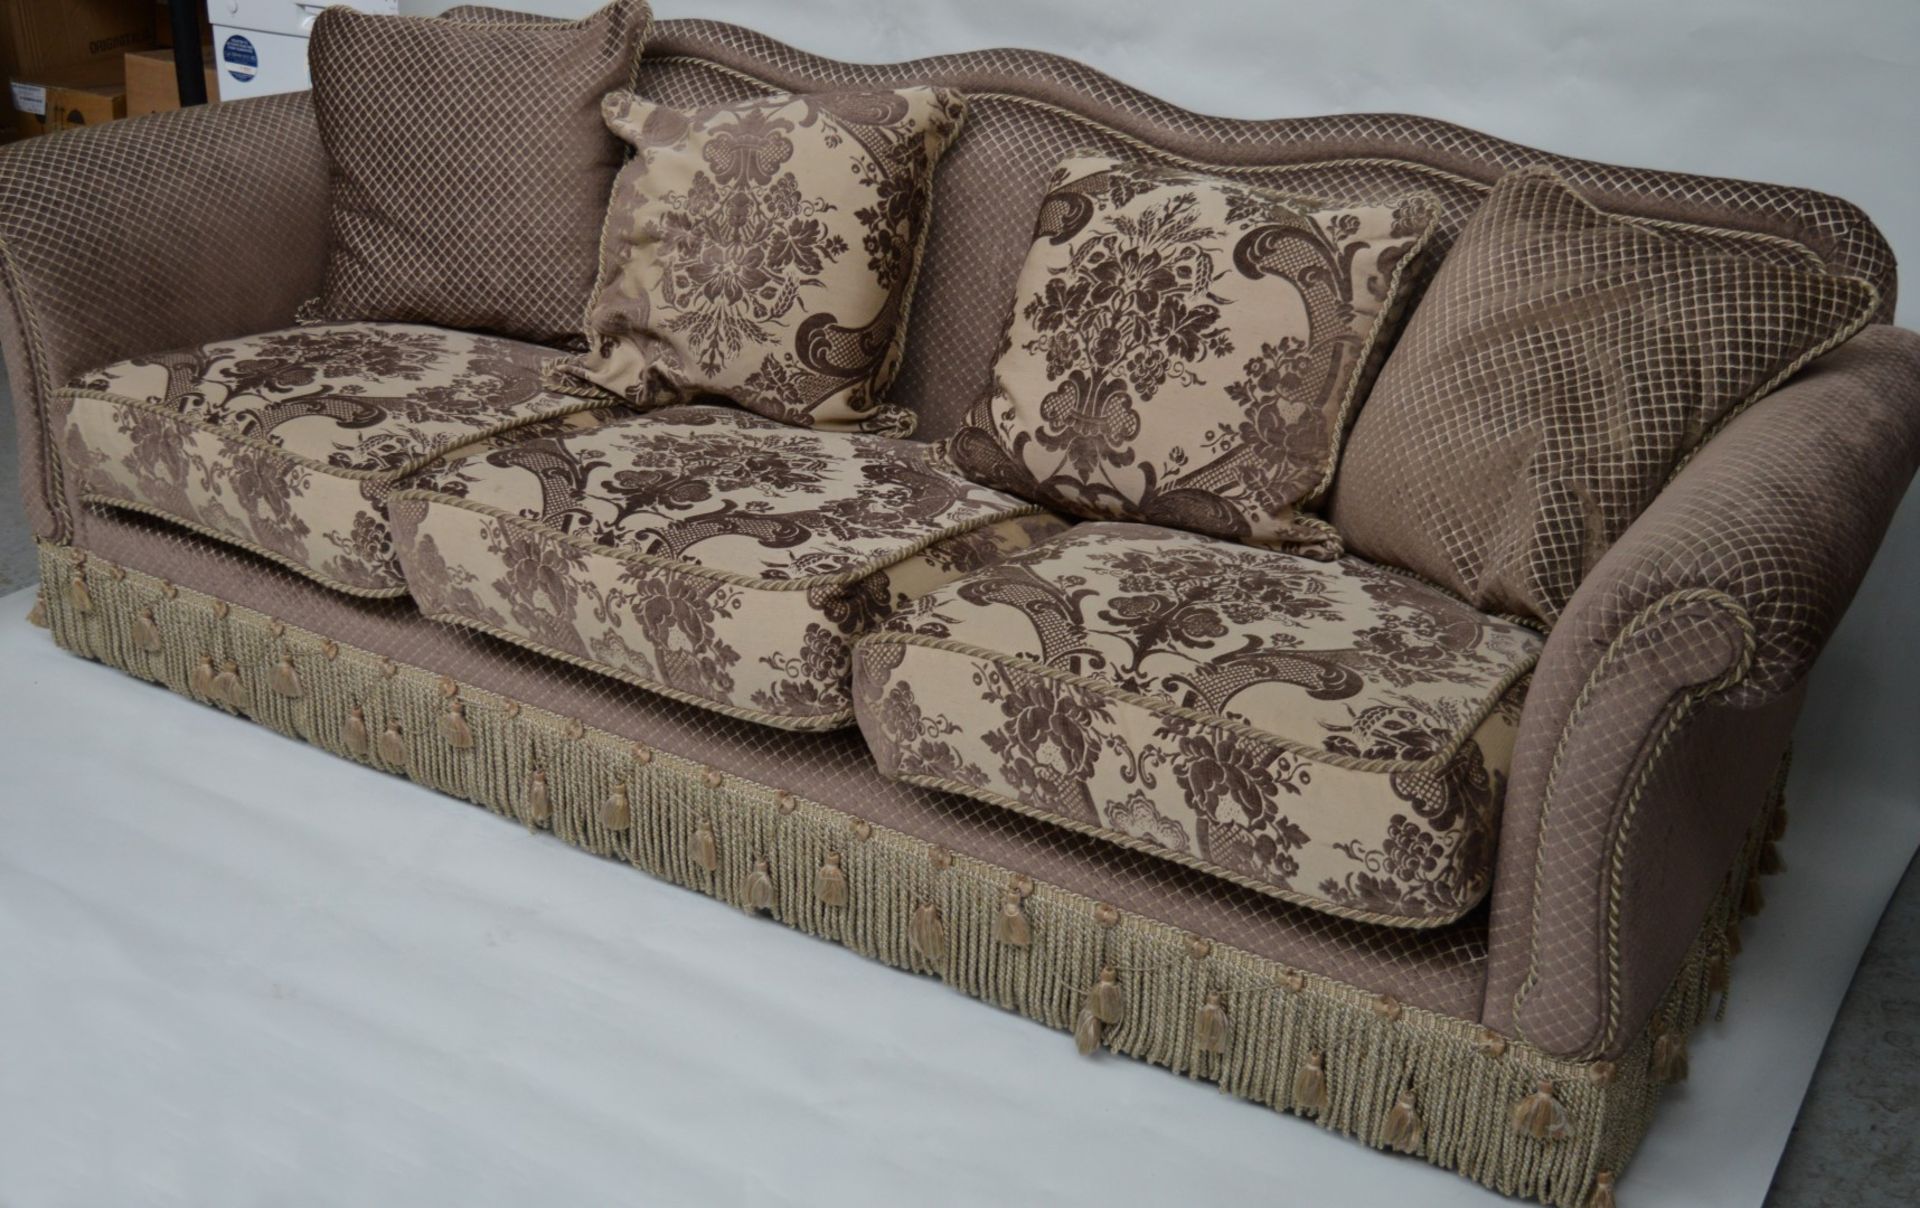 1 x Parker & Farr Abigail Special Sofa - Dimensions W240 x H87 x D89cm - Ref: 4081161 - CL007 - - Image 5 of 20